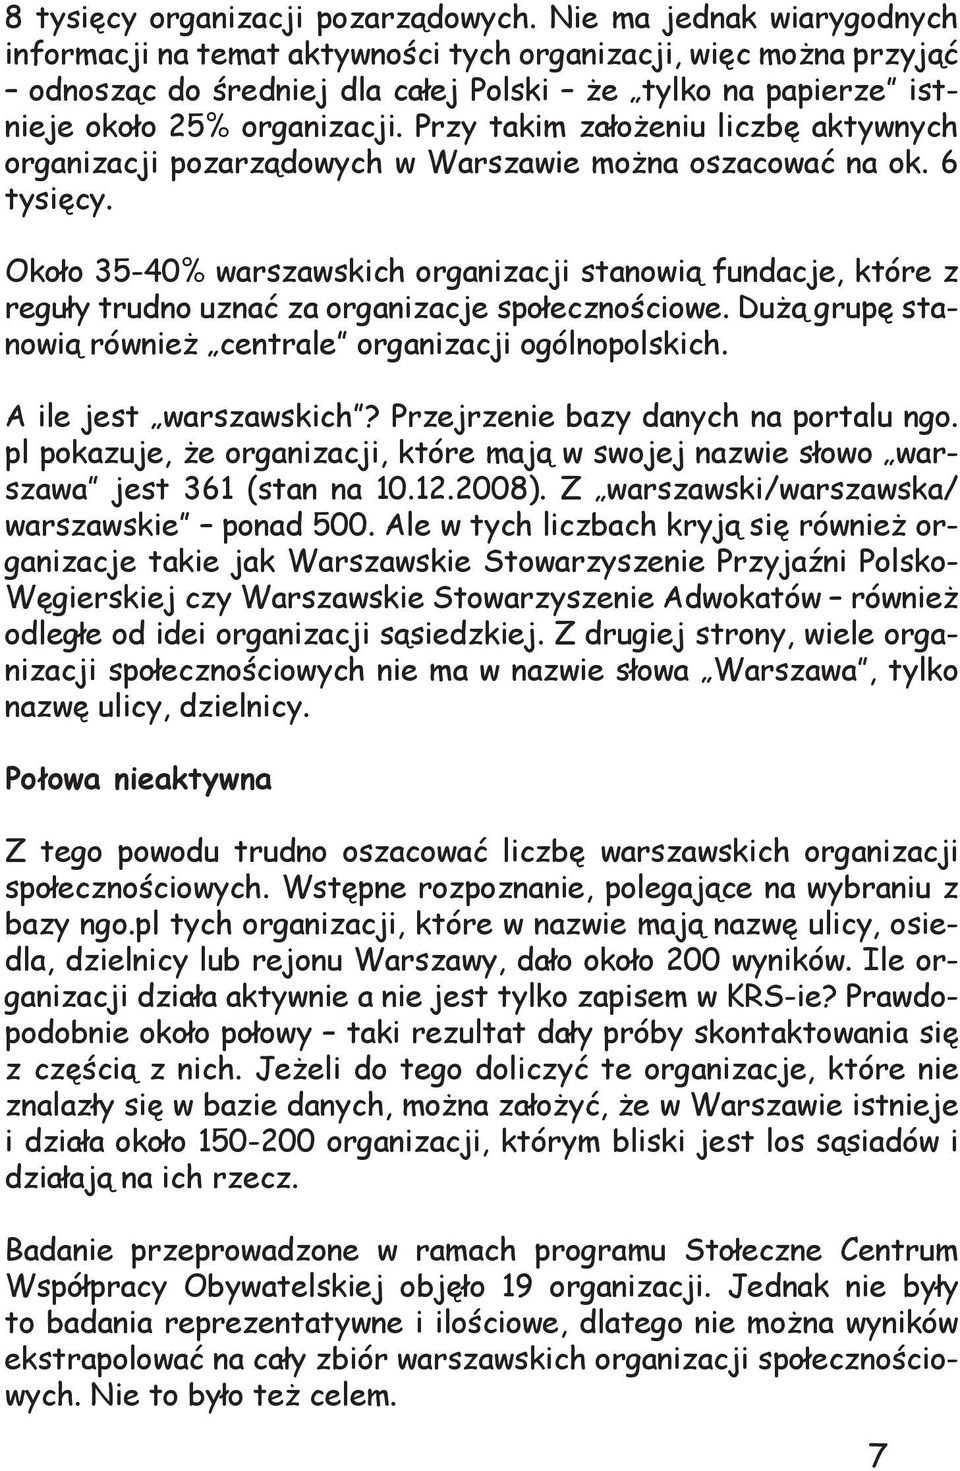 Przy takim założeniu liczbę aktywnych organizacji pozarządowych w Warszawie można oszacować na ok. 6 tysięcy.